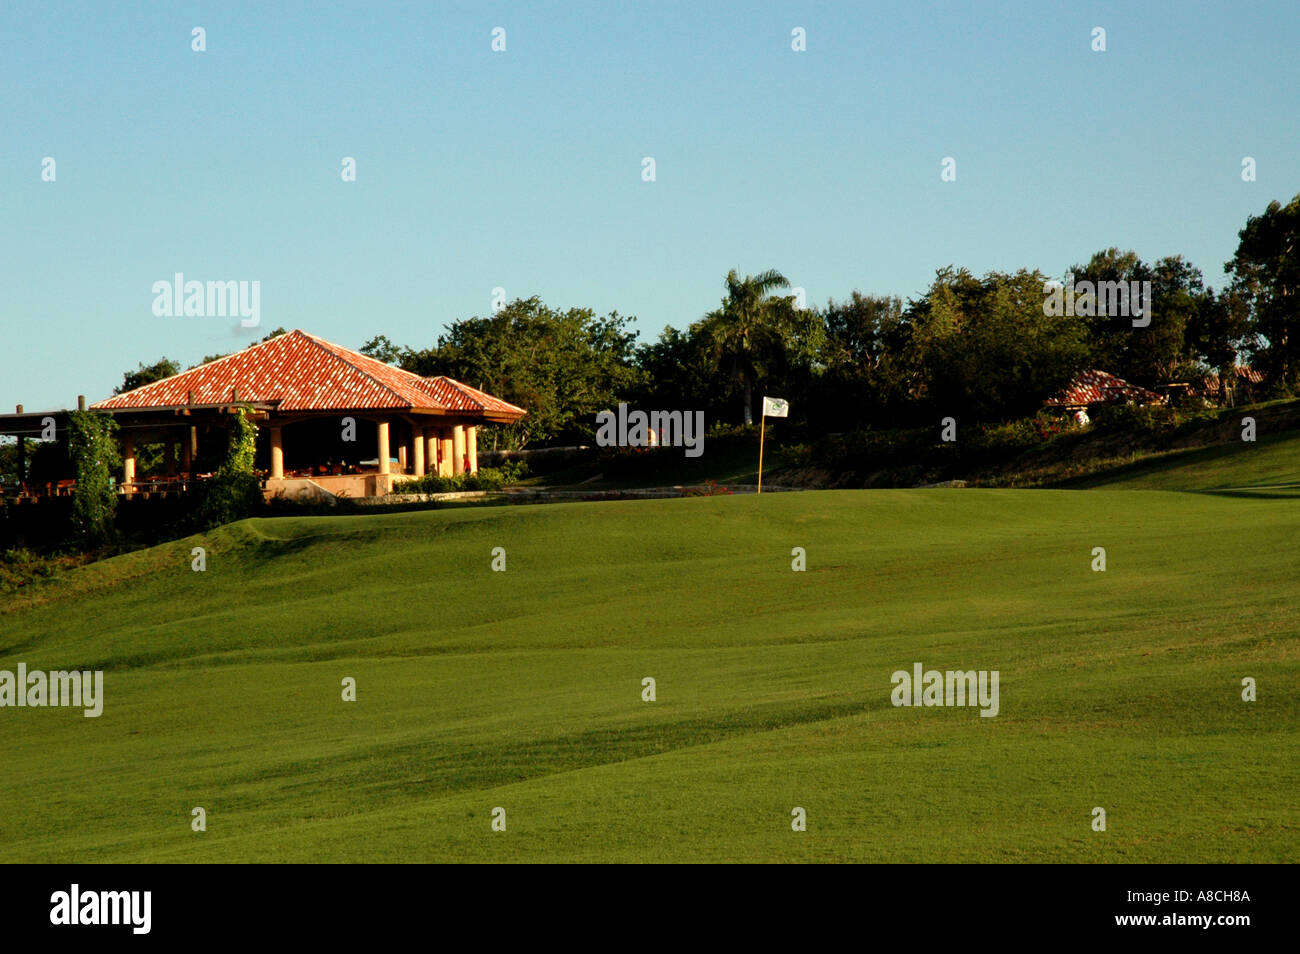 Dominican Republic Golf course Dye Fore Casa de Campo Stock Photo